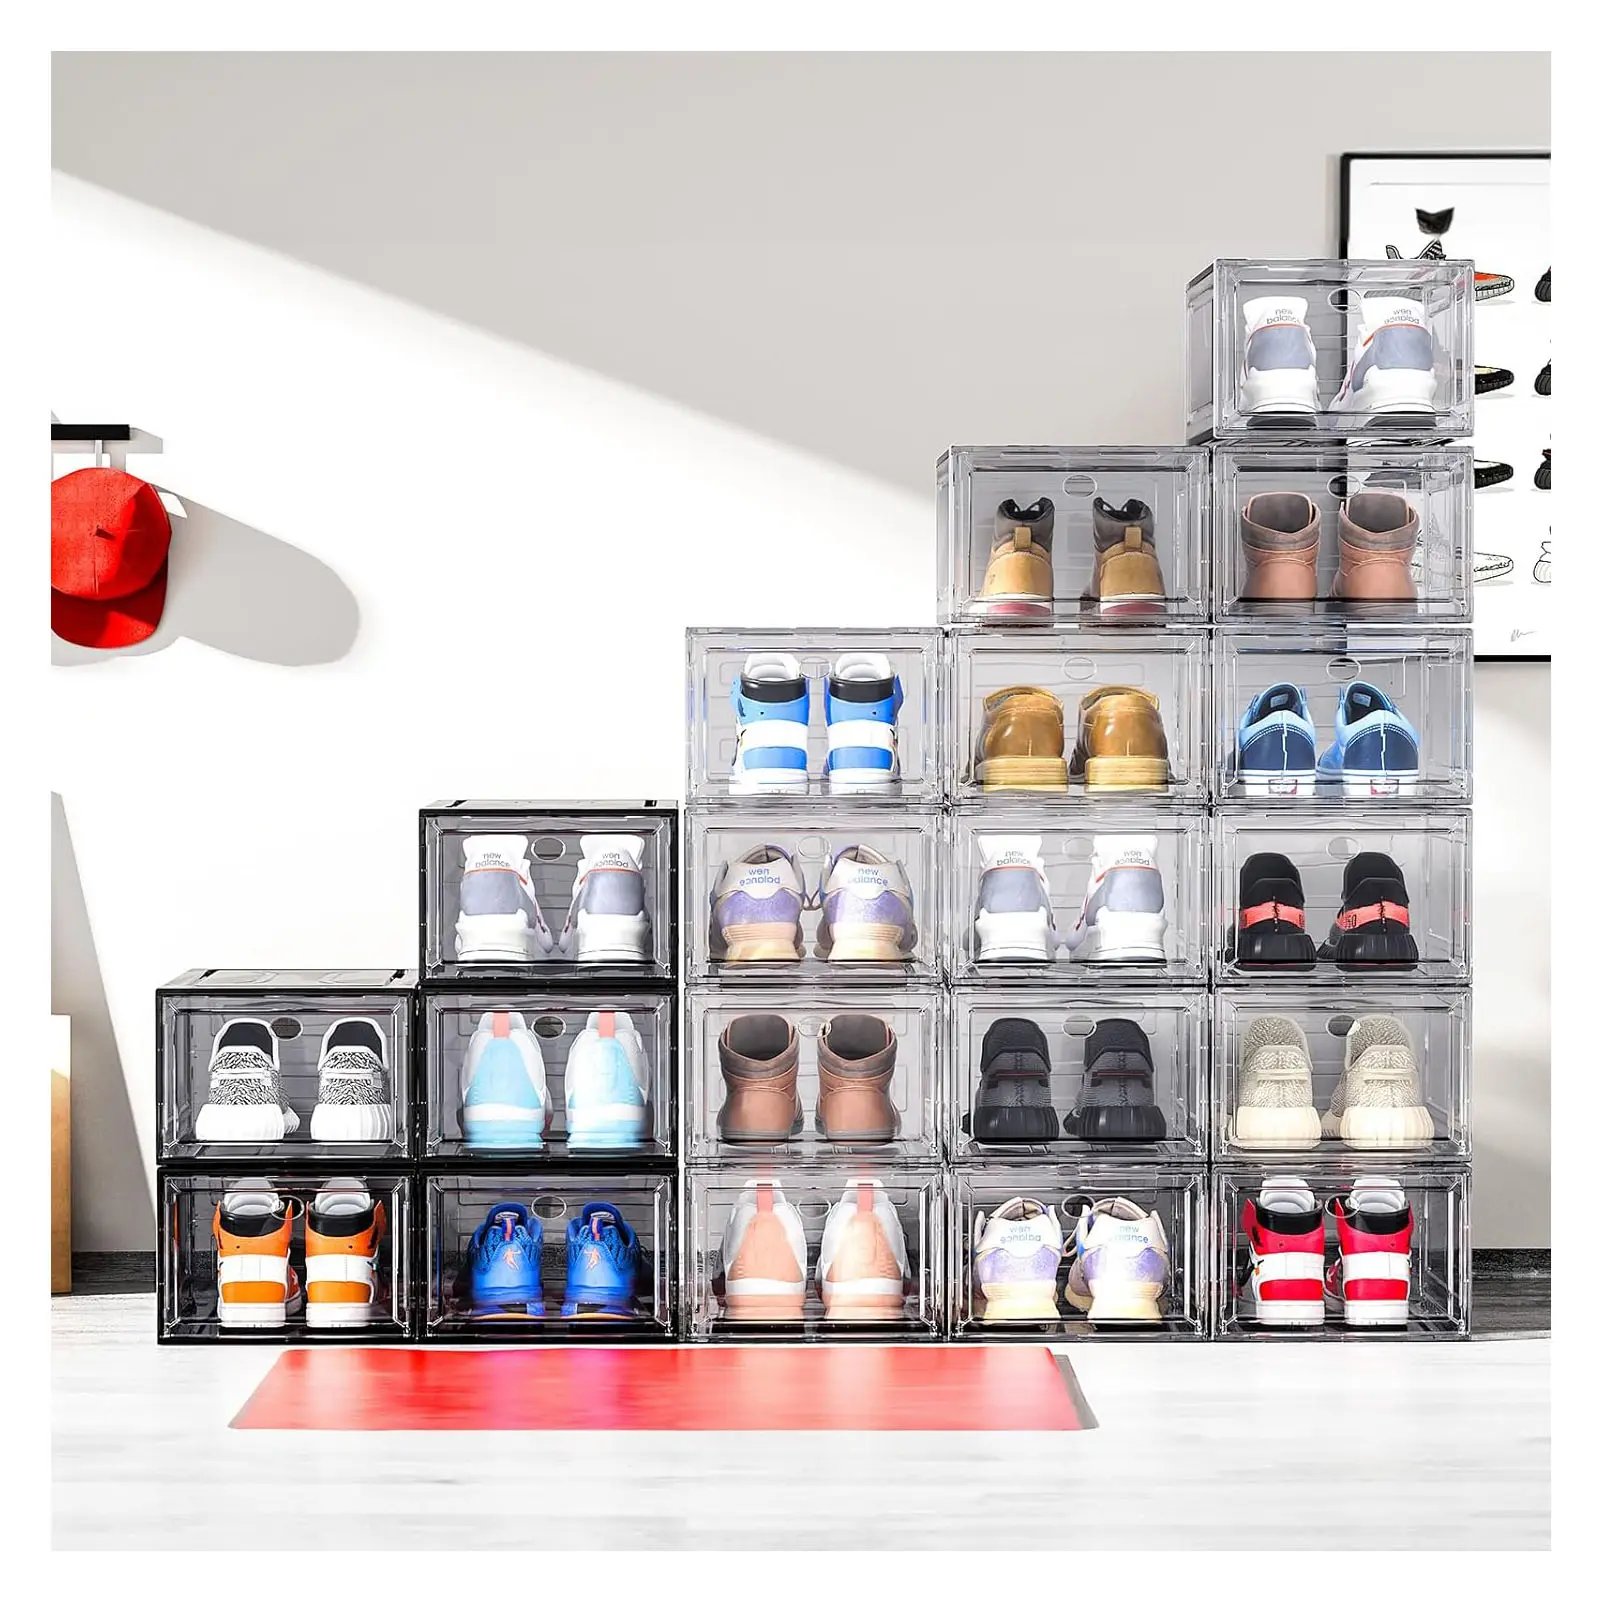 Caixas para embalagem de roupas íntimas de sapatos, sapatos de marca para homens, caixa com 12 pacotes, organizador de sapatos, preto